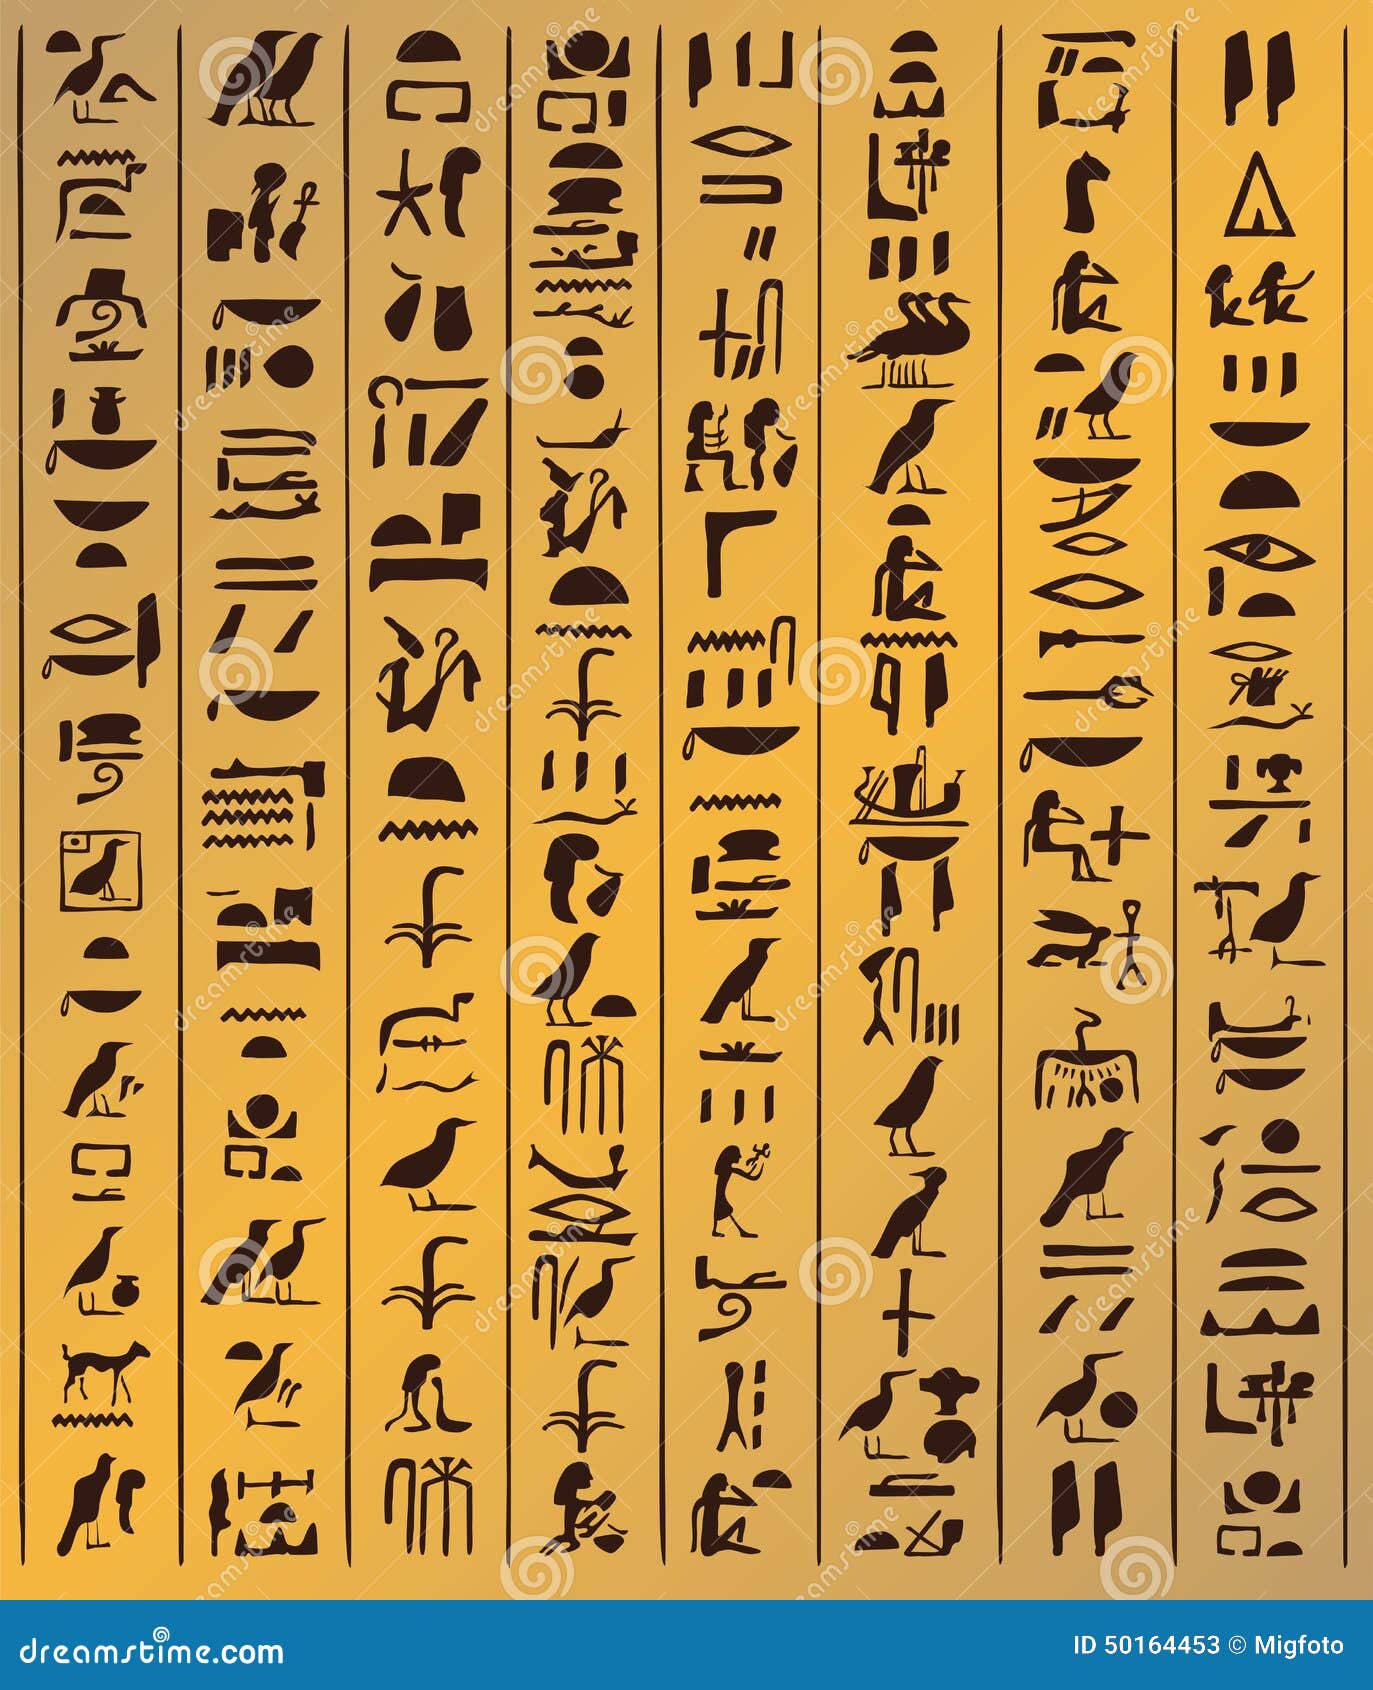 十五分钟看懂神秘的埃及艺术 - 知乎